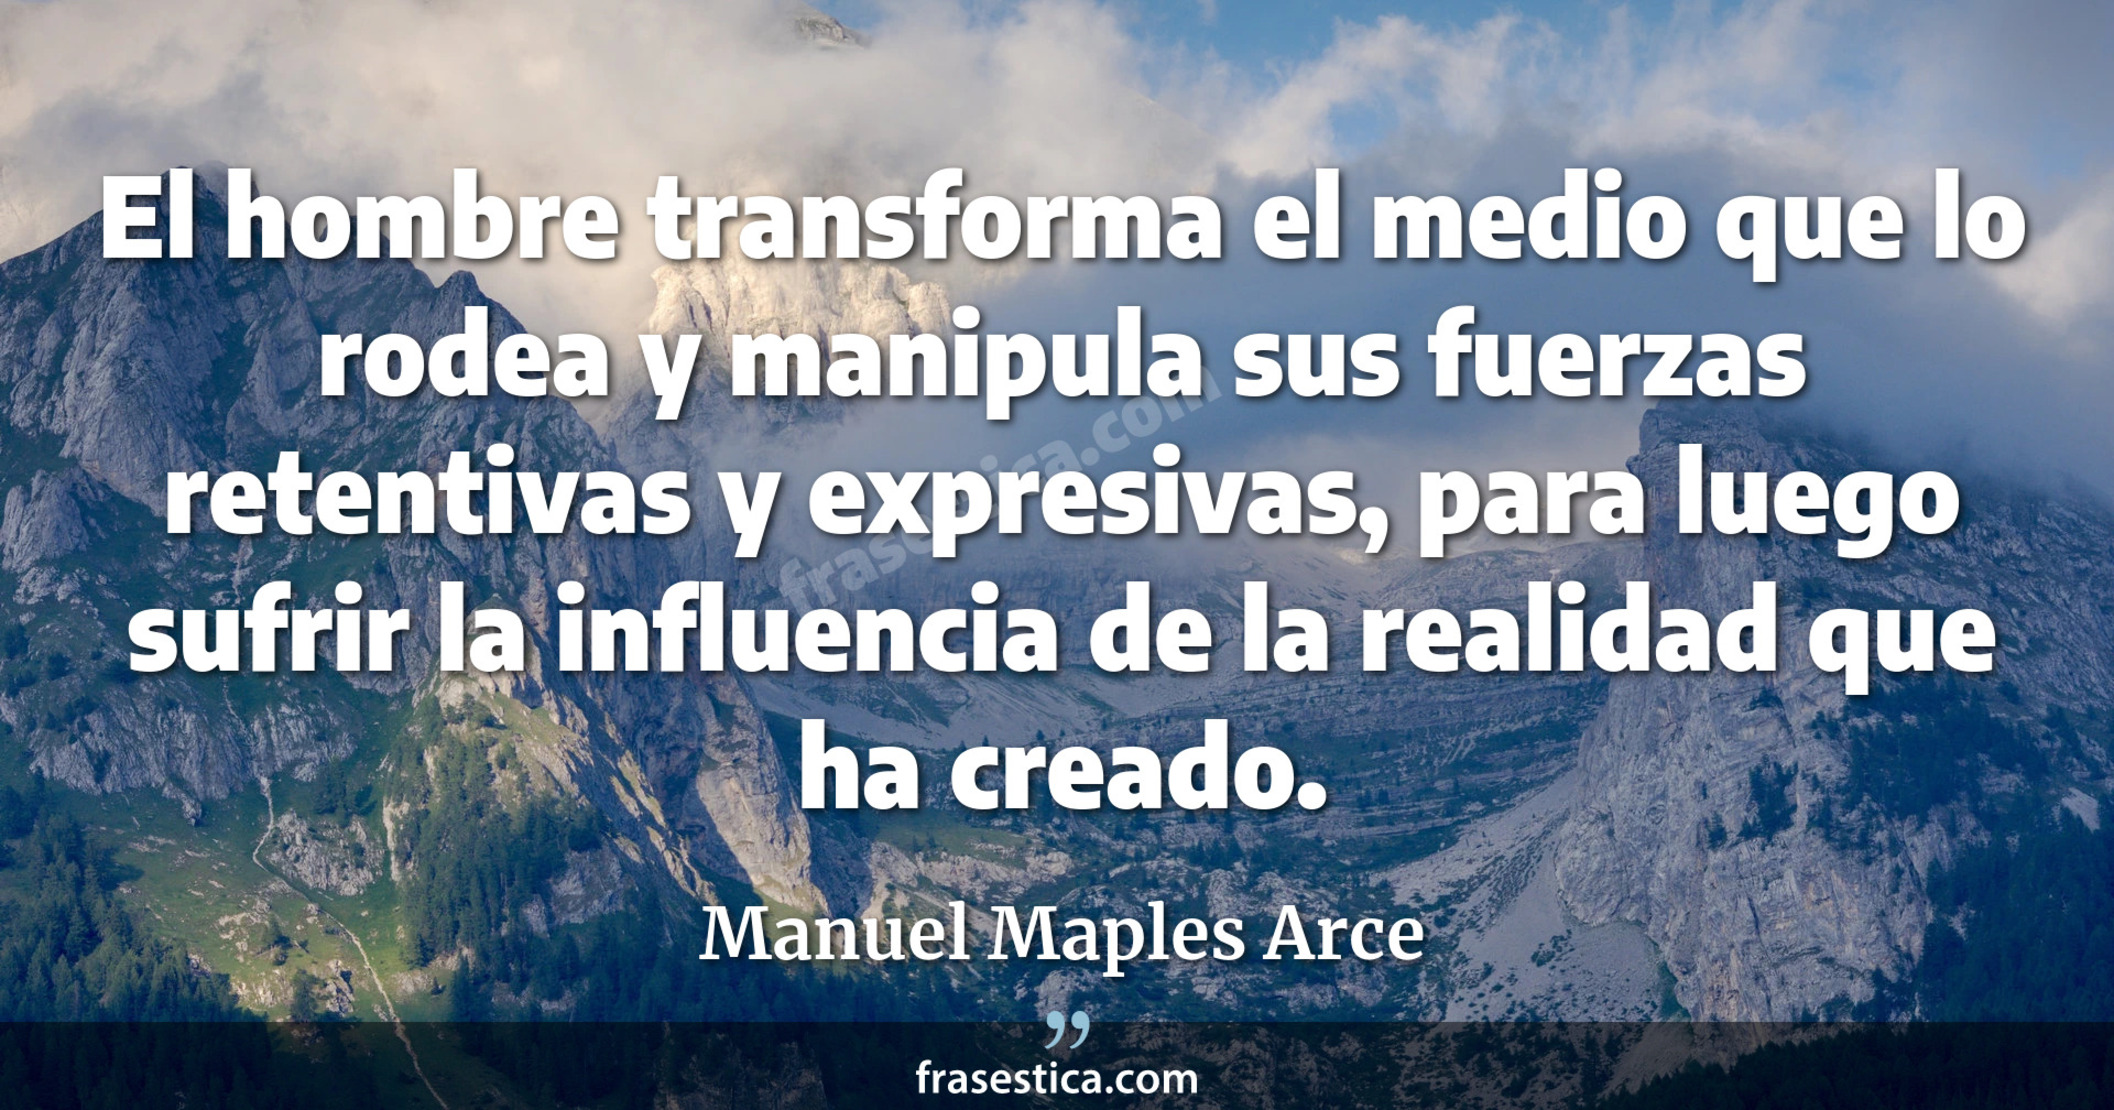 El hombre transforma el medio que lo rodea y manipula sus fuerzas retentivas y expresivas, para luego sufrir la influencia de la realidad que ha creado. - Manuel Maples Arce